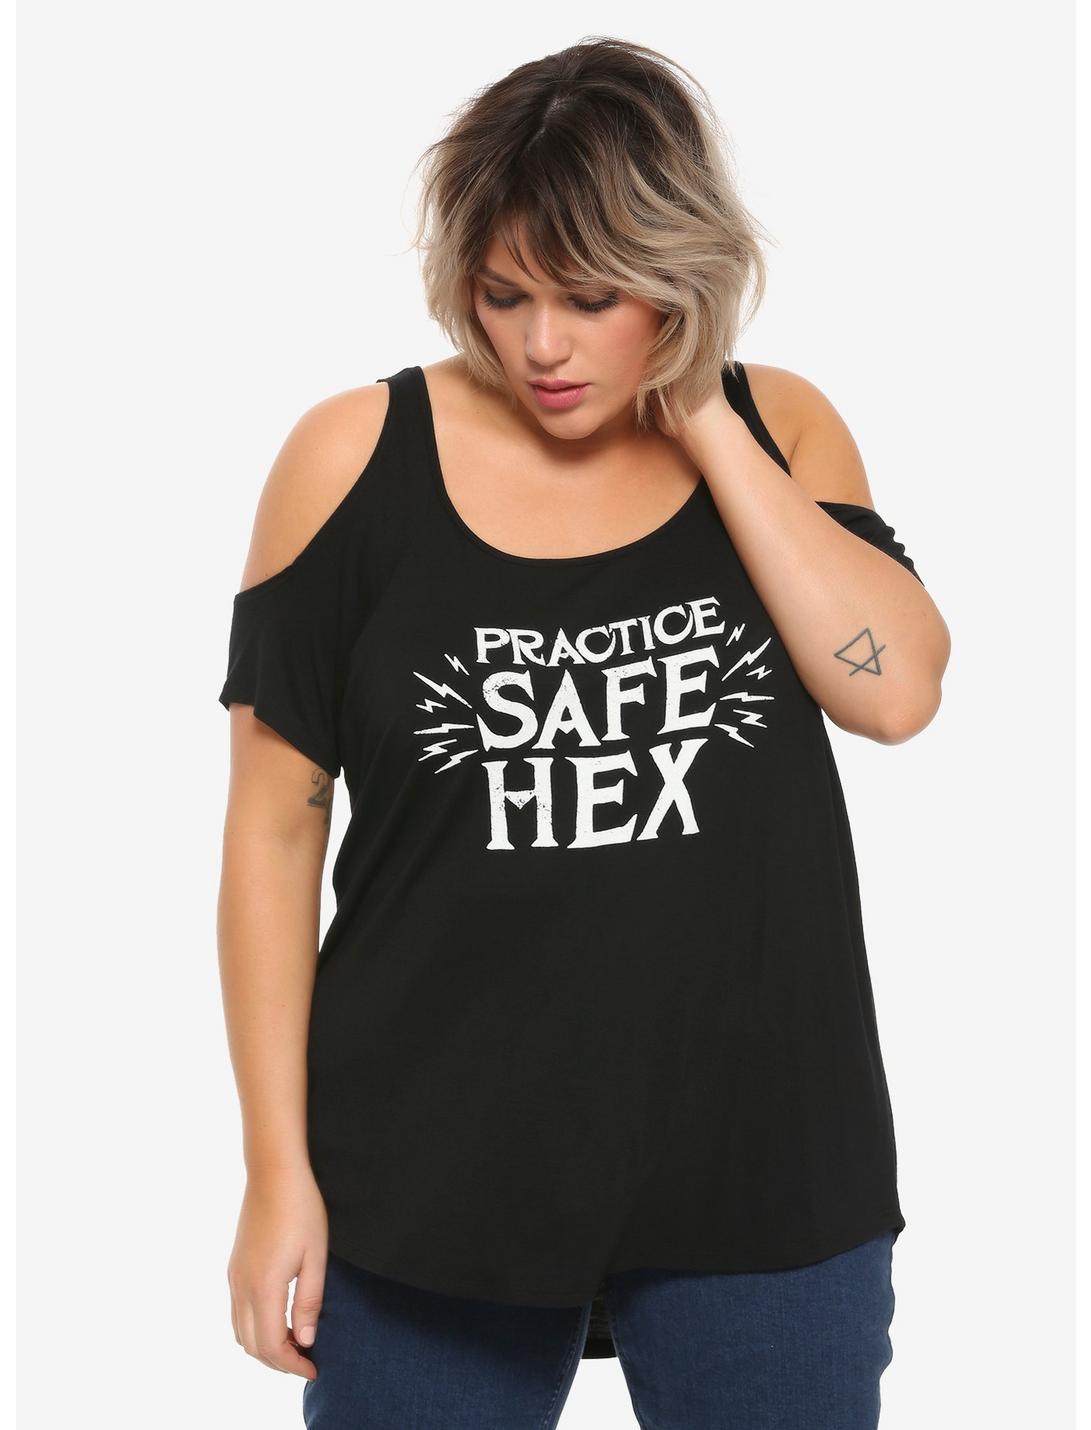 Practice Safe Hex Girls Cold Shoulder Top Plus Size, BLACK, hi-res